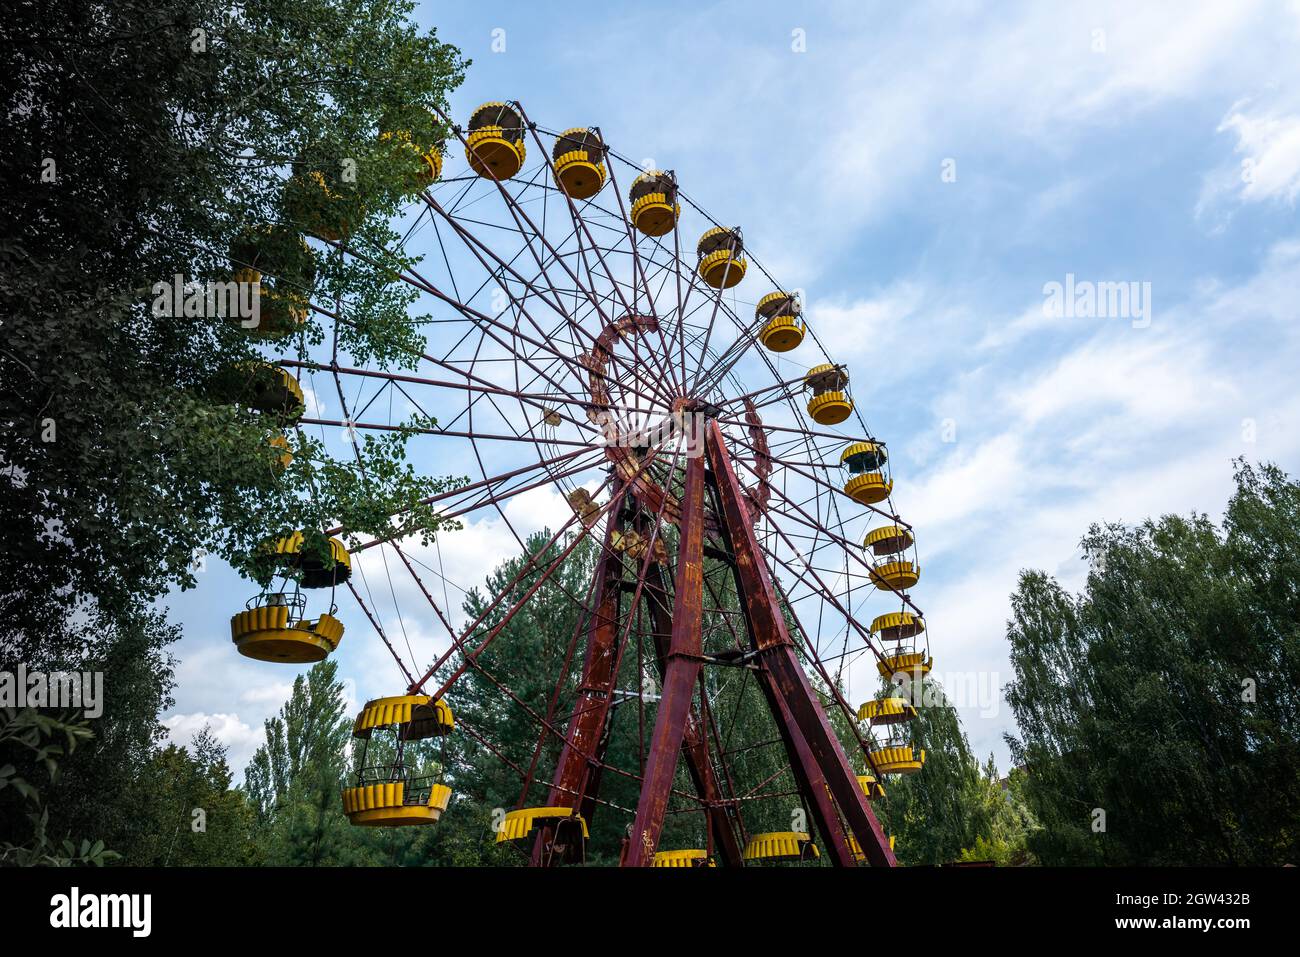 Riesenrad im verlassenen Vergnügungspark - Pripyat, Tschernobyl-Ausschlusszone, Ukraine Stockfoto